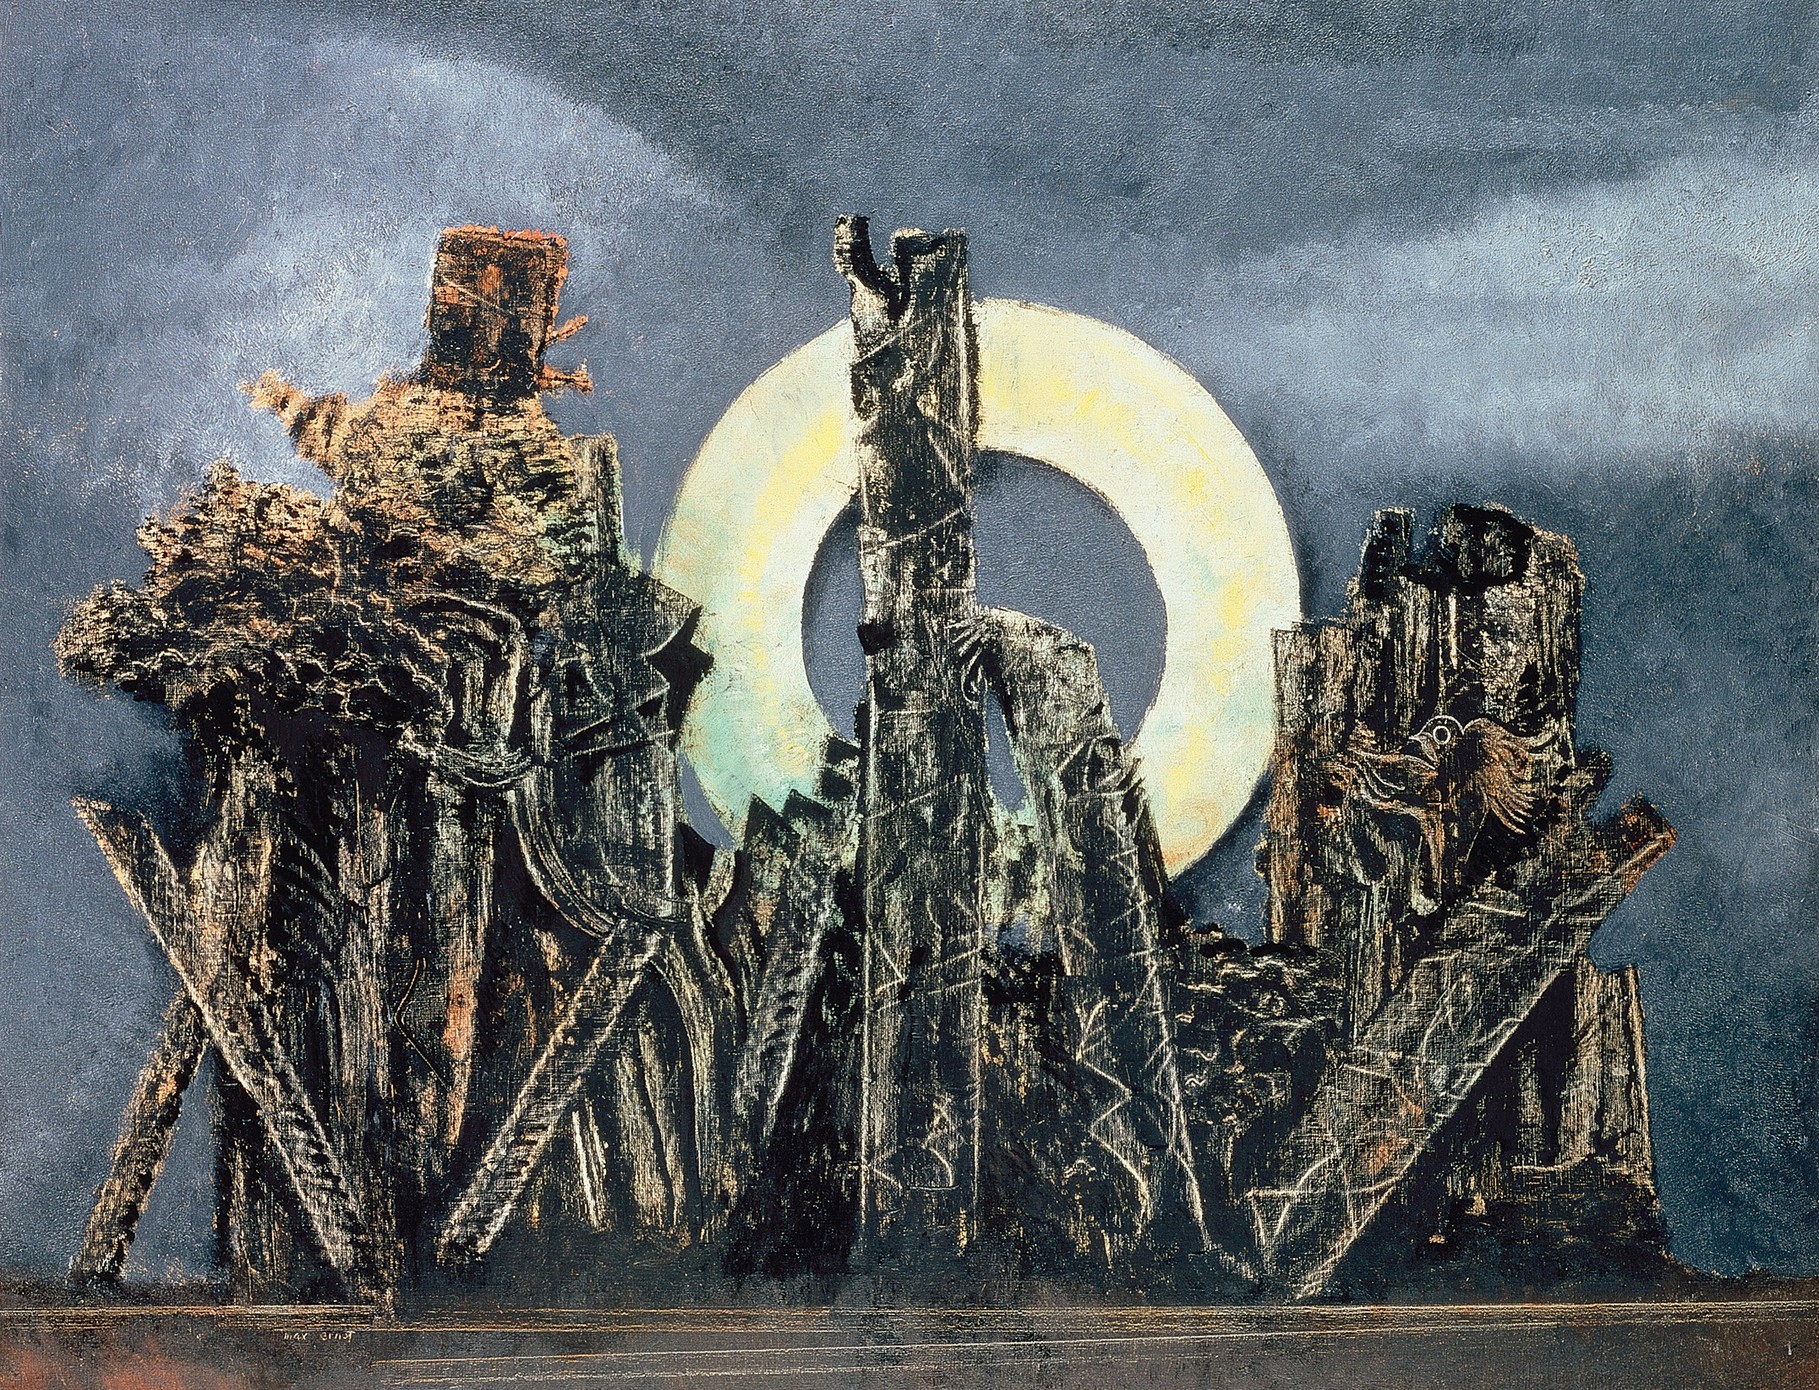 【美術解説】マックス・エルンスト「コラージュ技法で知られるシュルレアリスト」マックス・エルンスト / Max Ernst